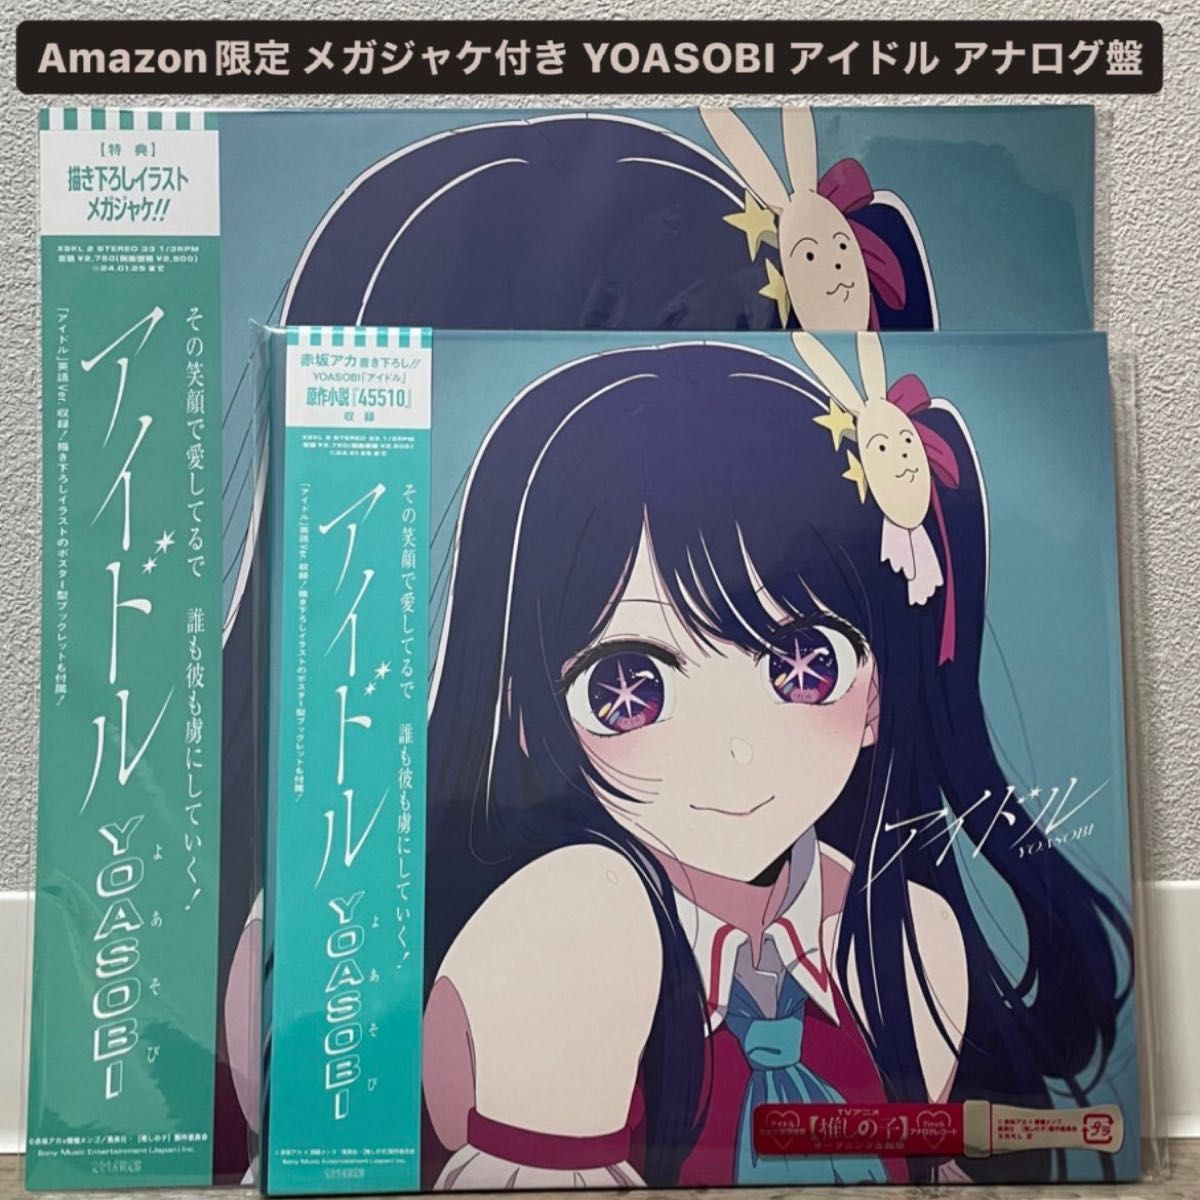 YOASOBI アイドル アナログ盤 メガジャケ付き Amazon限定